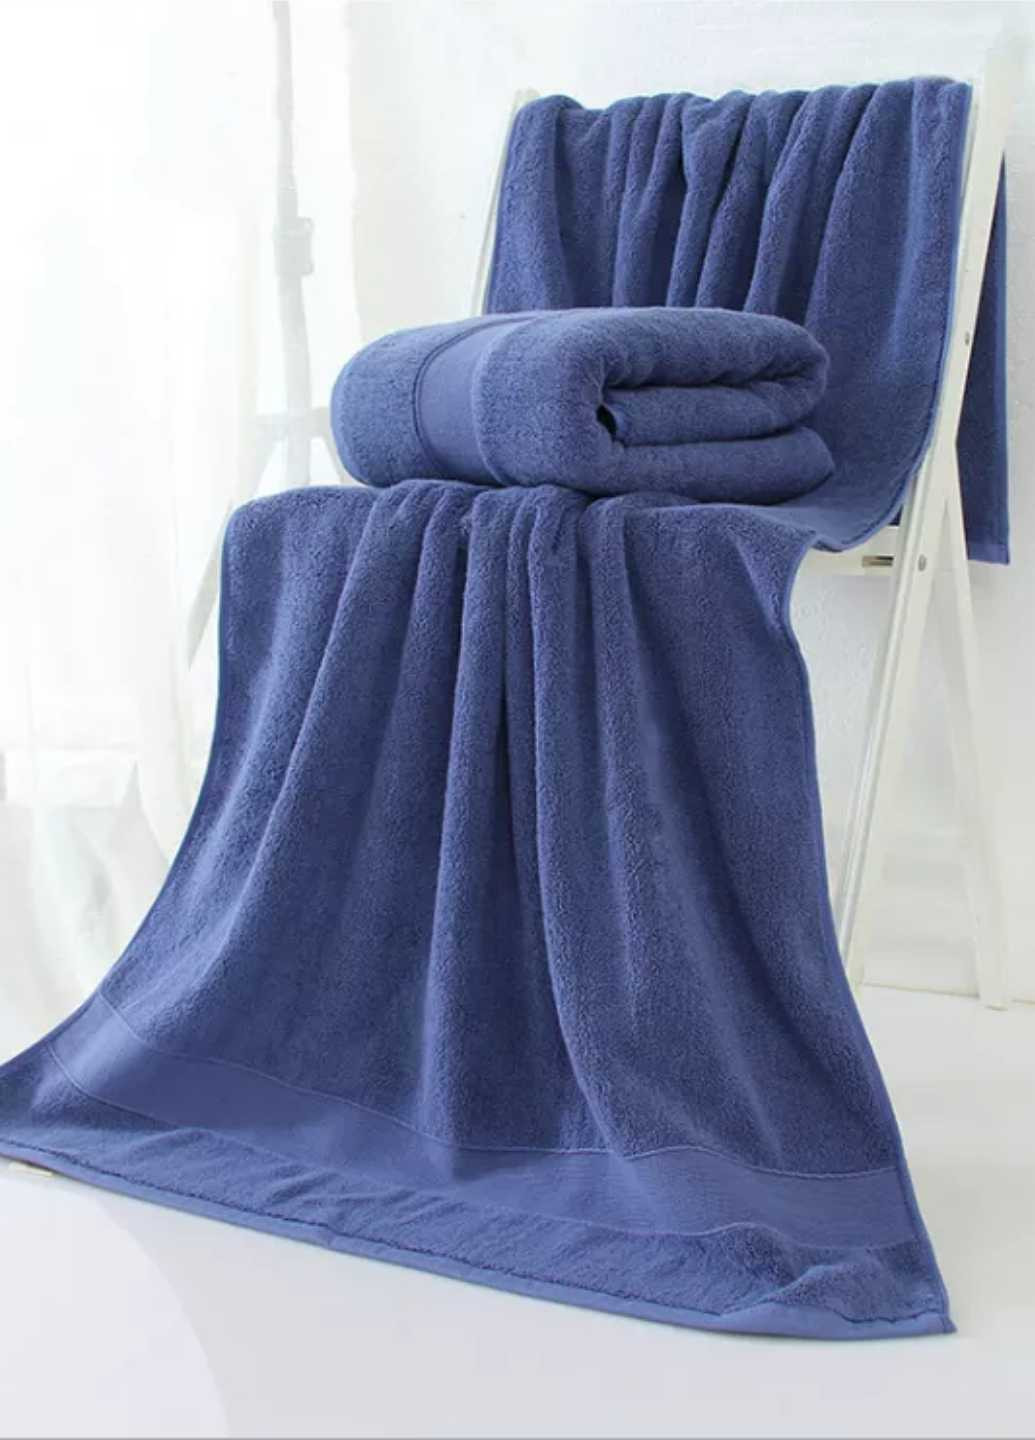 Lovely Svi полотенце махровое банное (хлопок) в подарочном пакете размер: 70 на 140 см синий однотонный синий производство - Китай